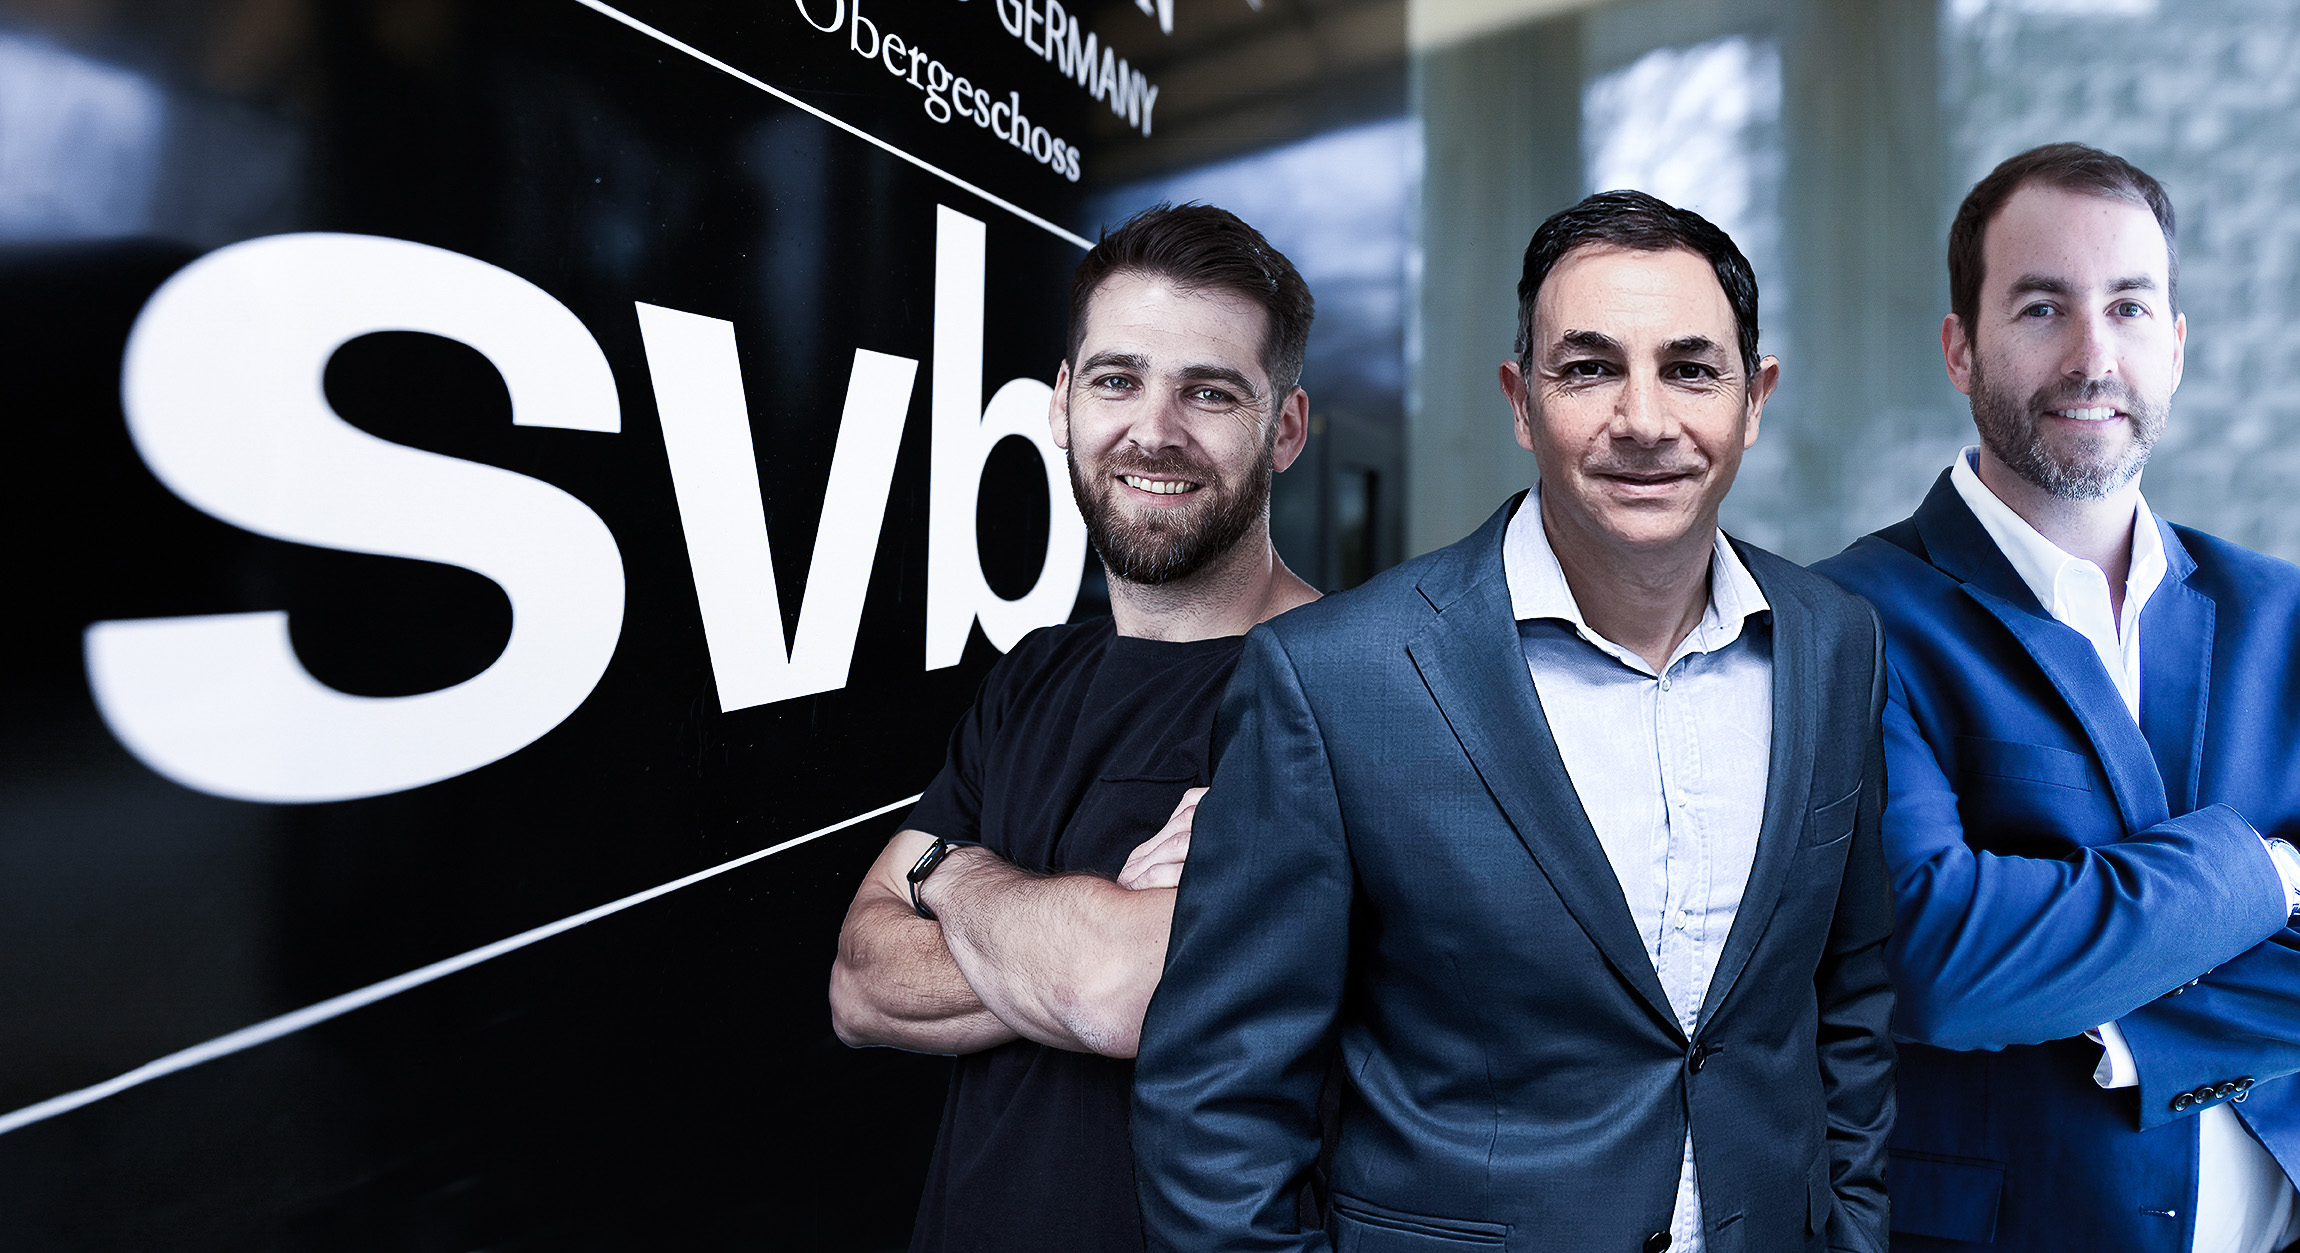 Hablan representantes del venture capital en Chile sobre el Silicon Valley Bank: el VC no dejará de invertir en startups